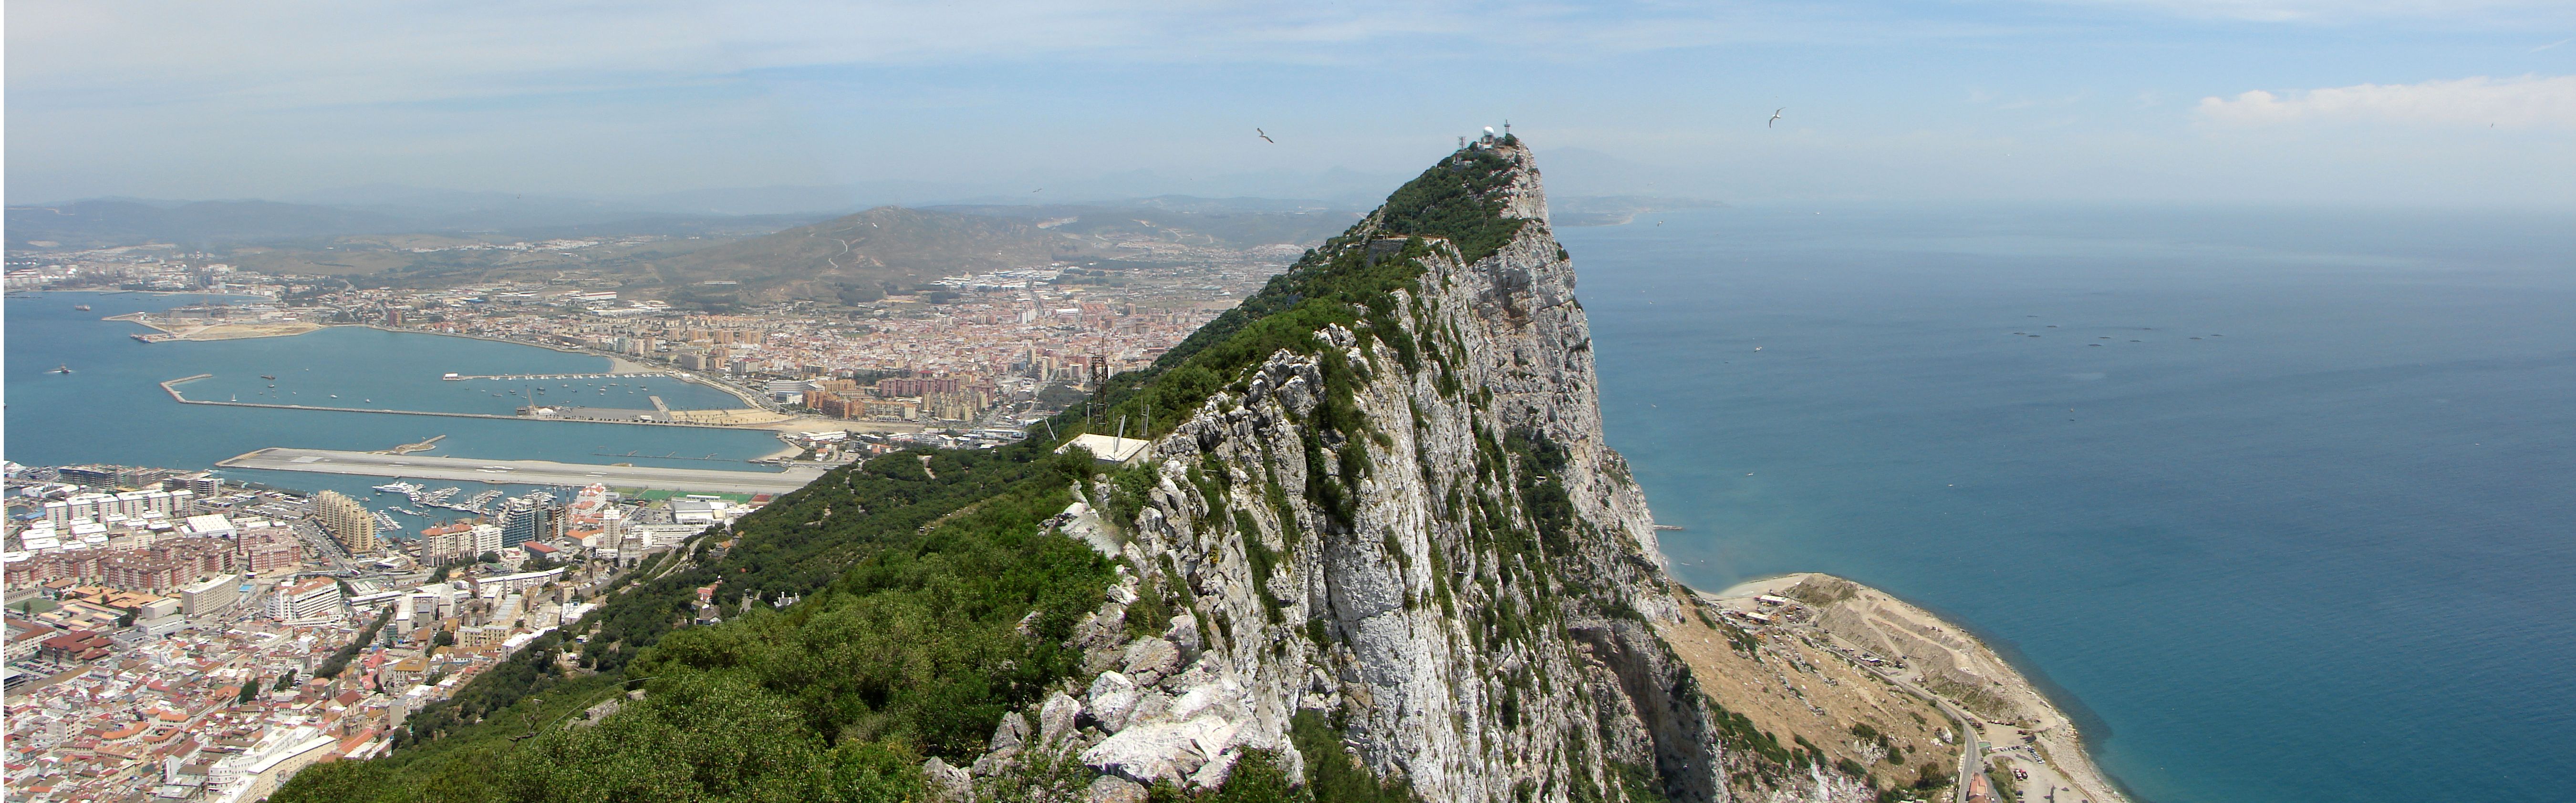 Gibraltar teme los perjuicios del nacionalismo español inflamado por Catalunya